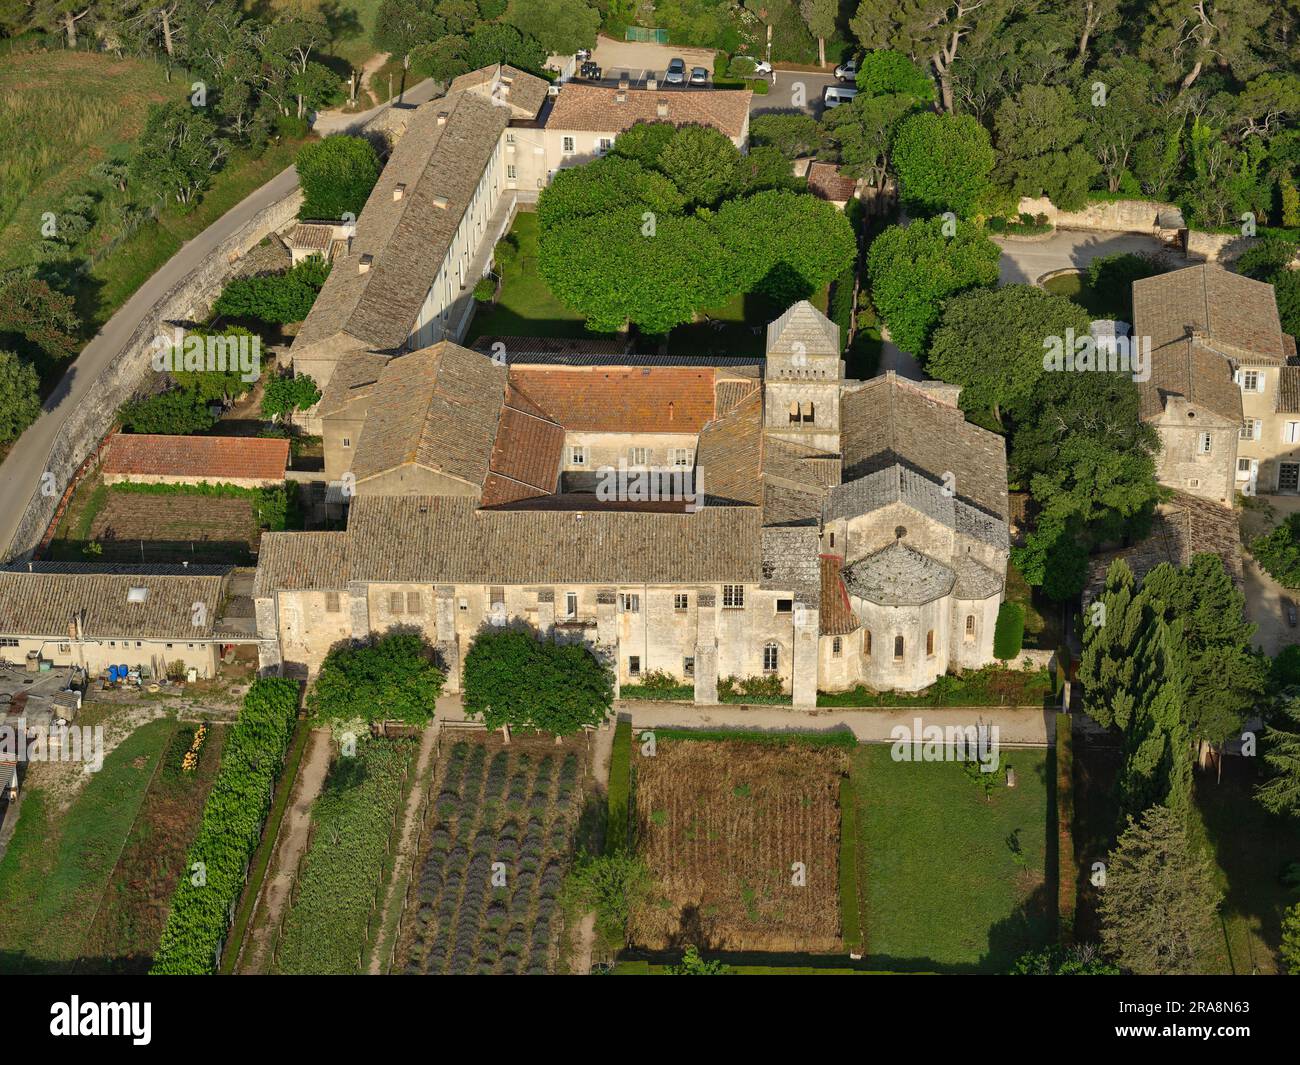 AERIAL VIEW. Monastery Saint-Paul de Mausole. Saint-Rémy-de-Provence, Bouches-du-Rhône, Provence-Alpes-Côte d'Azur, France. Stock Photo